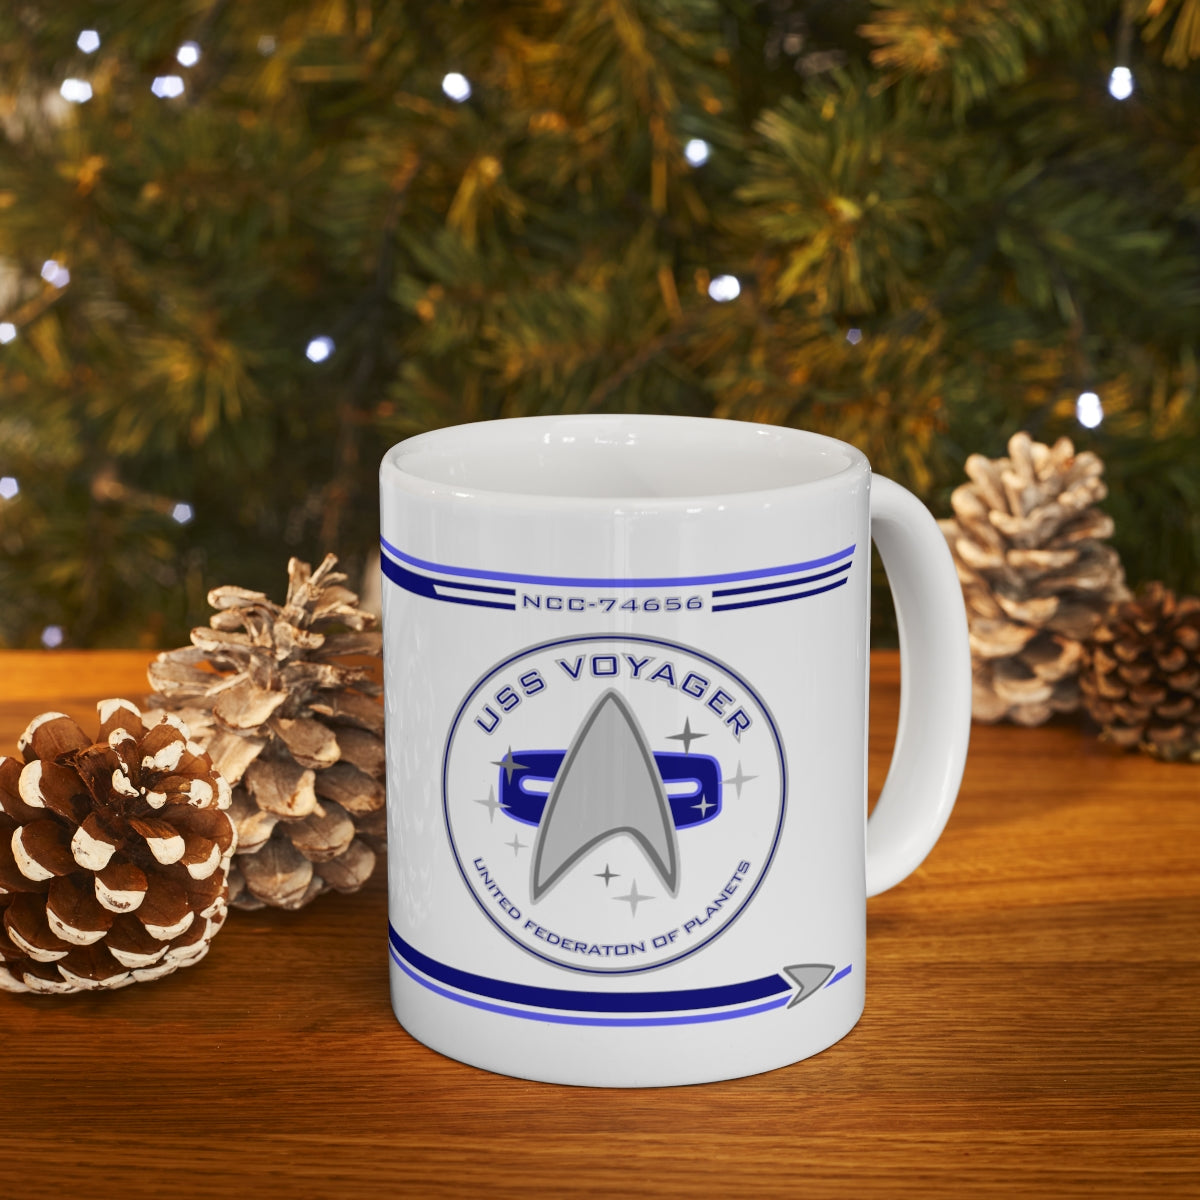 Star Trek: Voyager Property Of U.S.S. Voyager White Mug